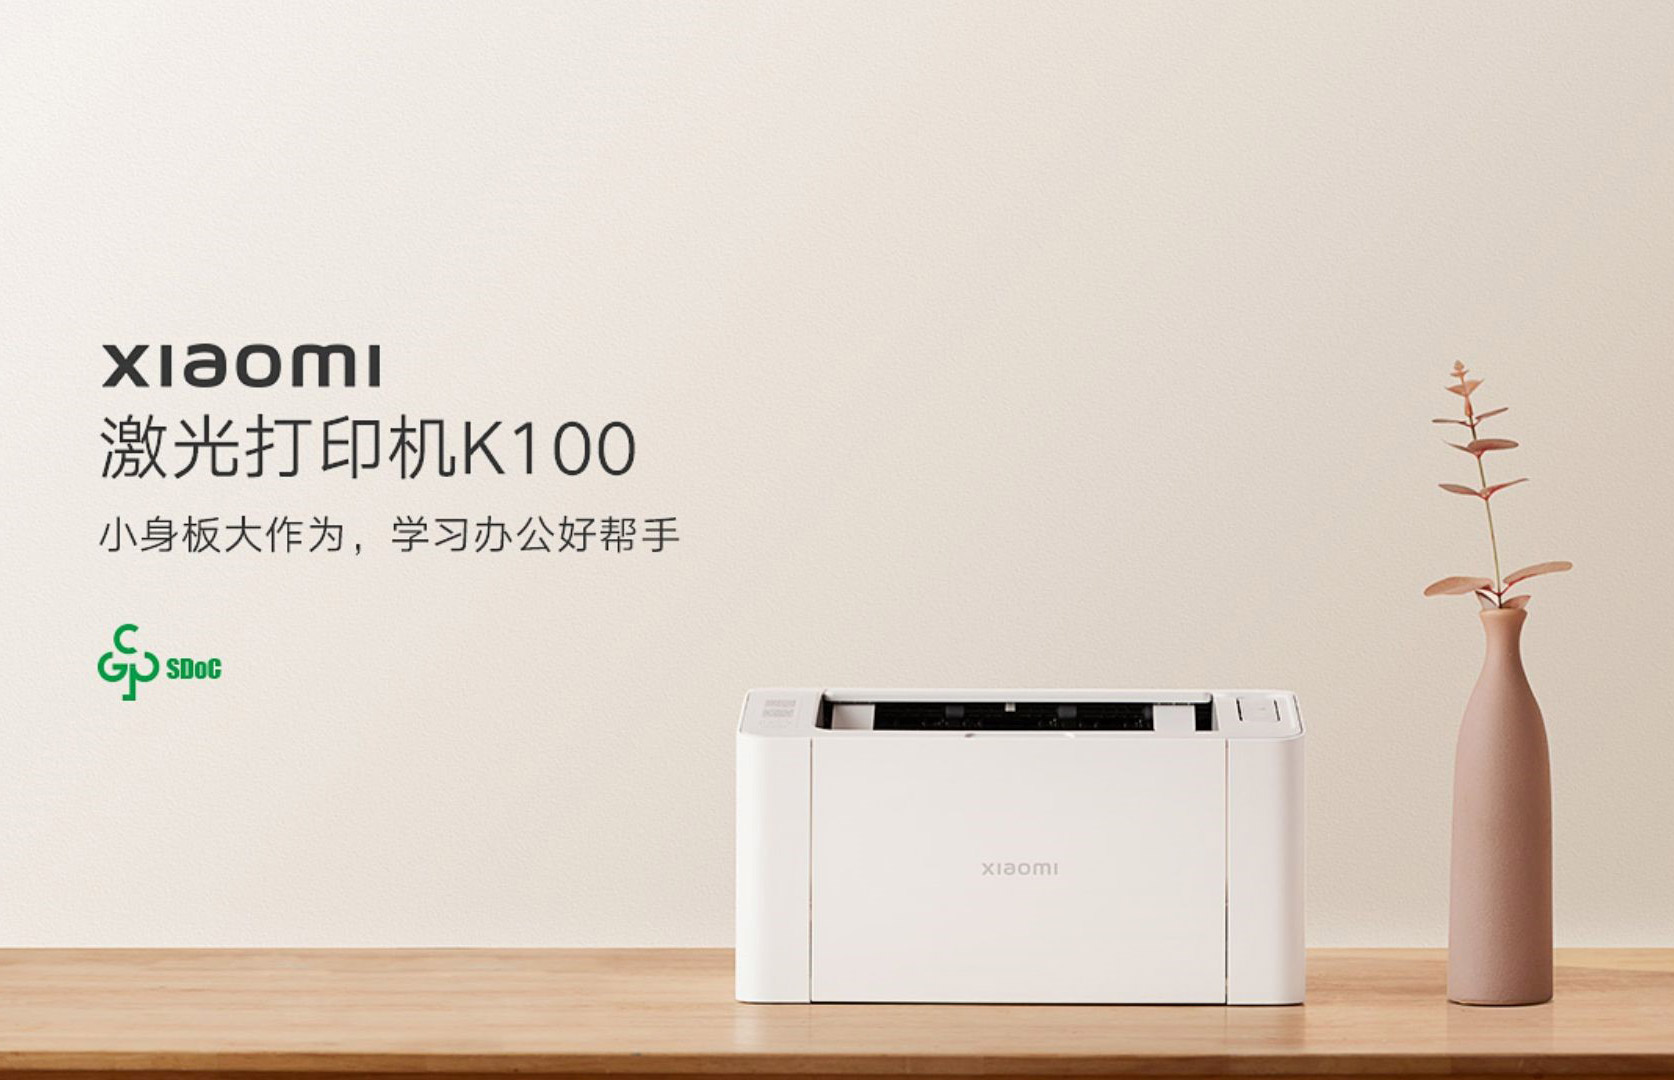 Представлено економічний лазерний принтер Xiaomi Laser Printer K100